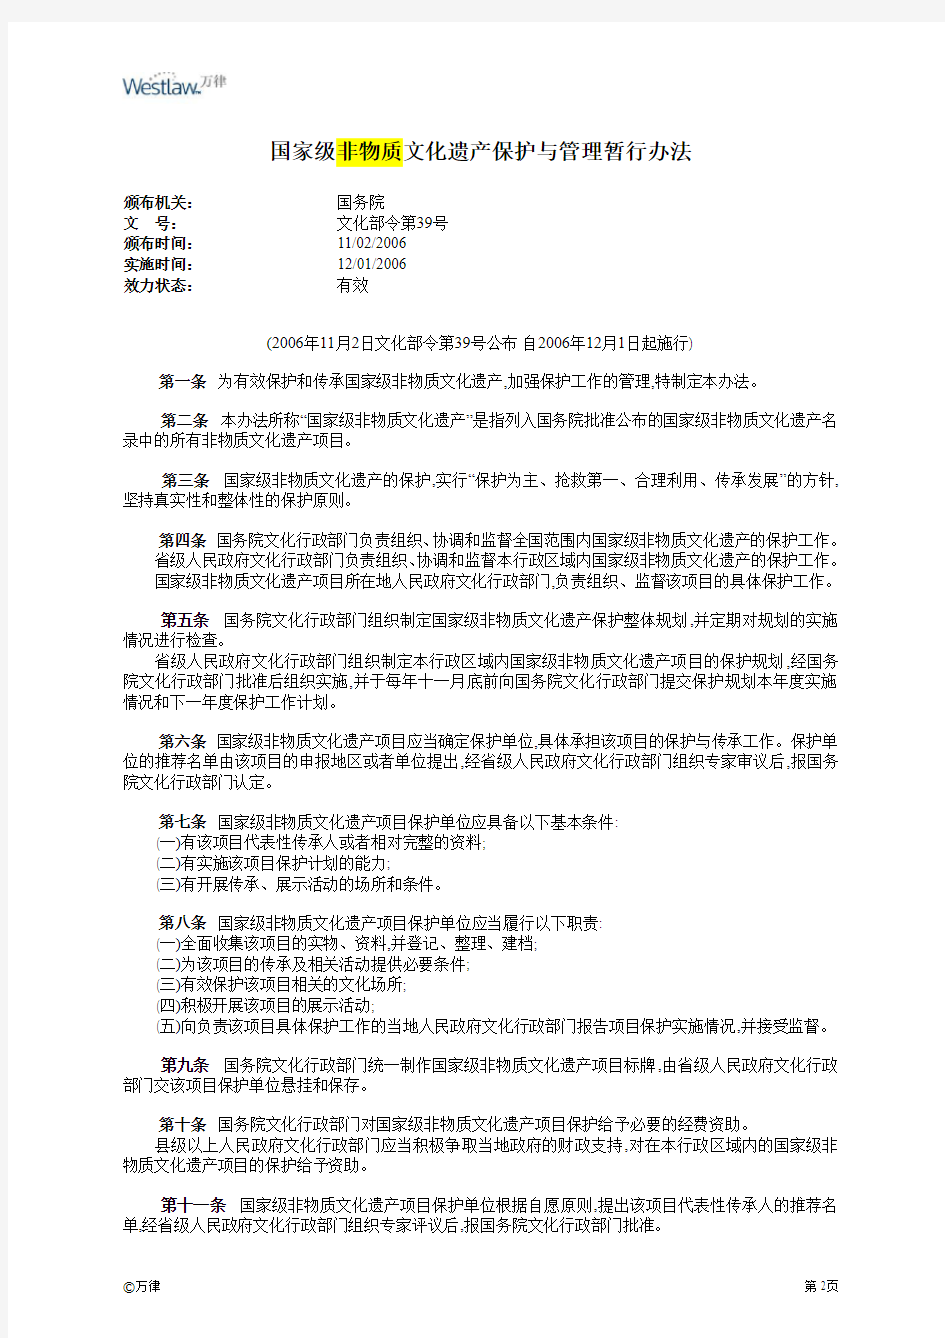 2006 国家级非物质文化遗产保护与管理暂行办法-中文